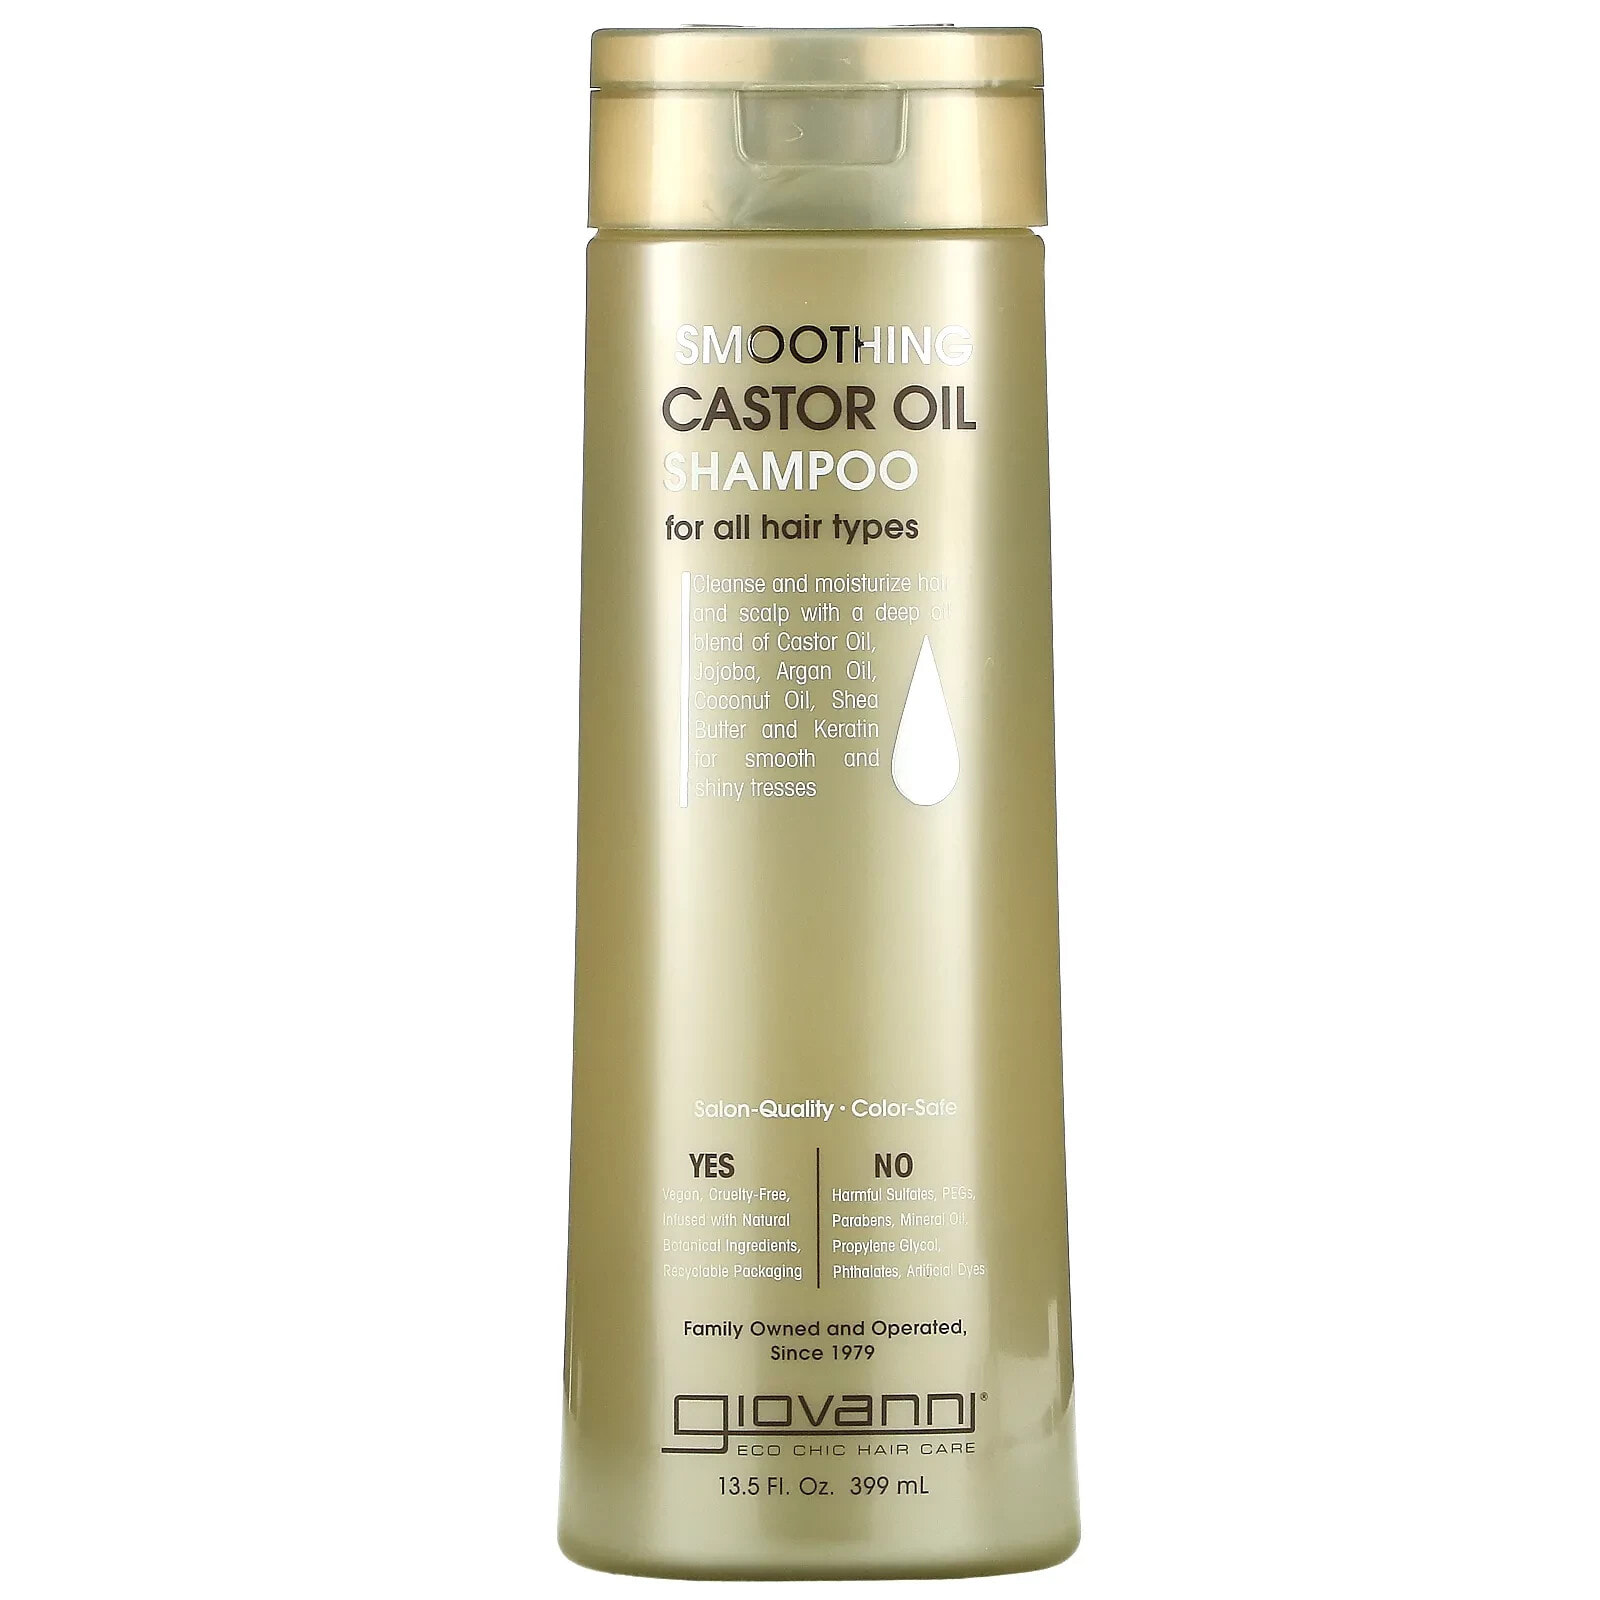 Giovanni Smoothing Castor Oil Shampoo Разглаживающий шампунь с касторовым маслом, для всех типов волос 399 мл